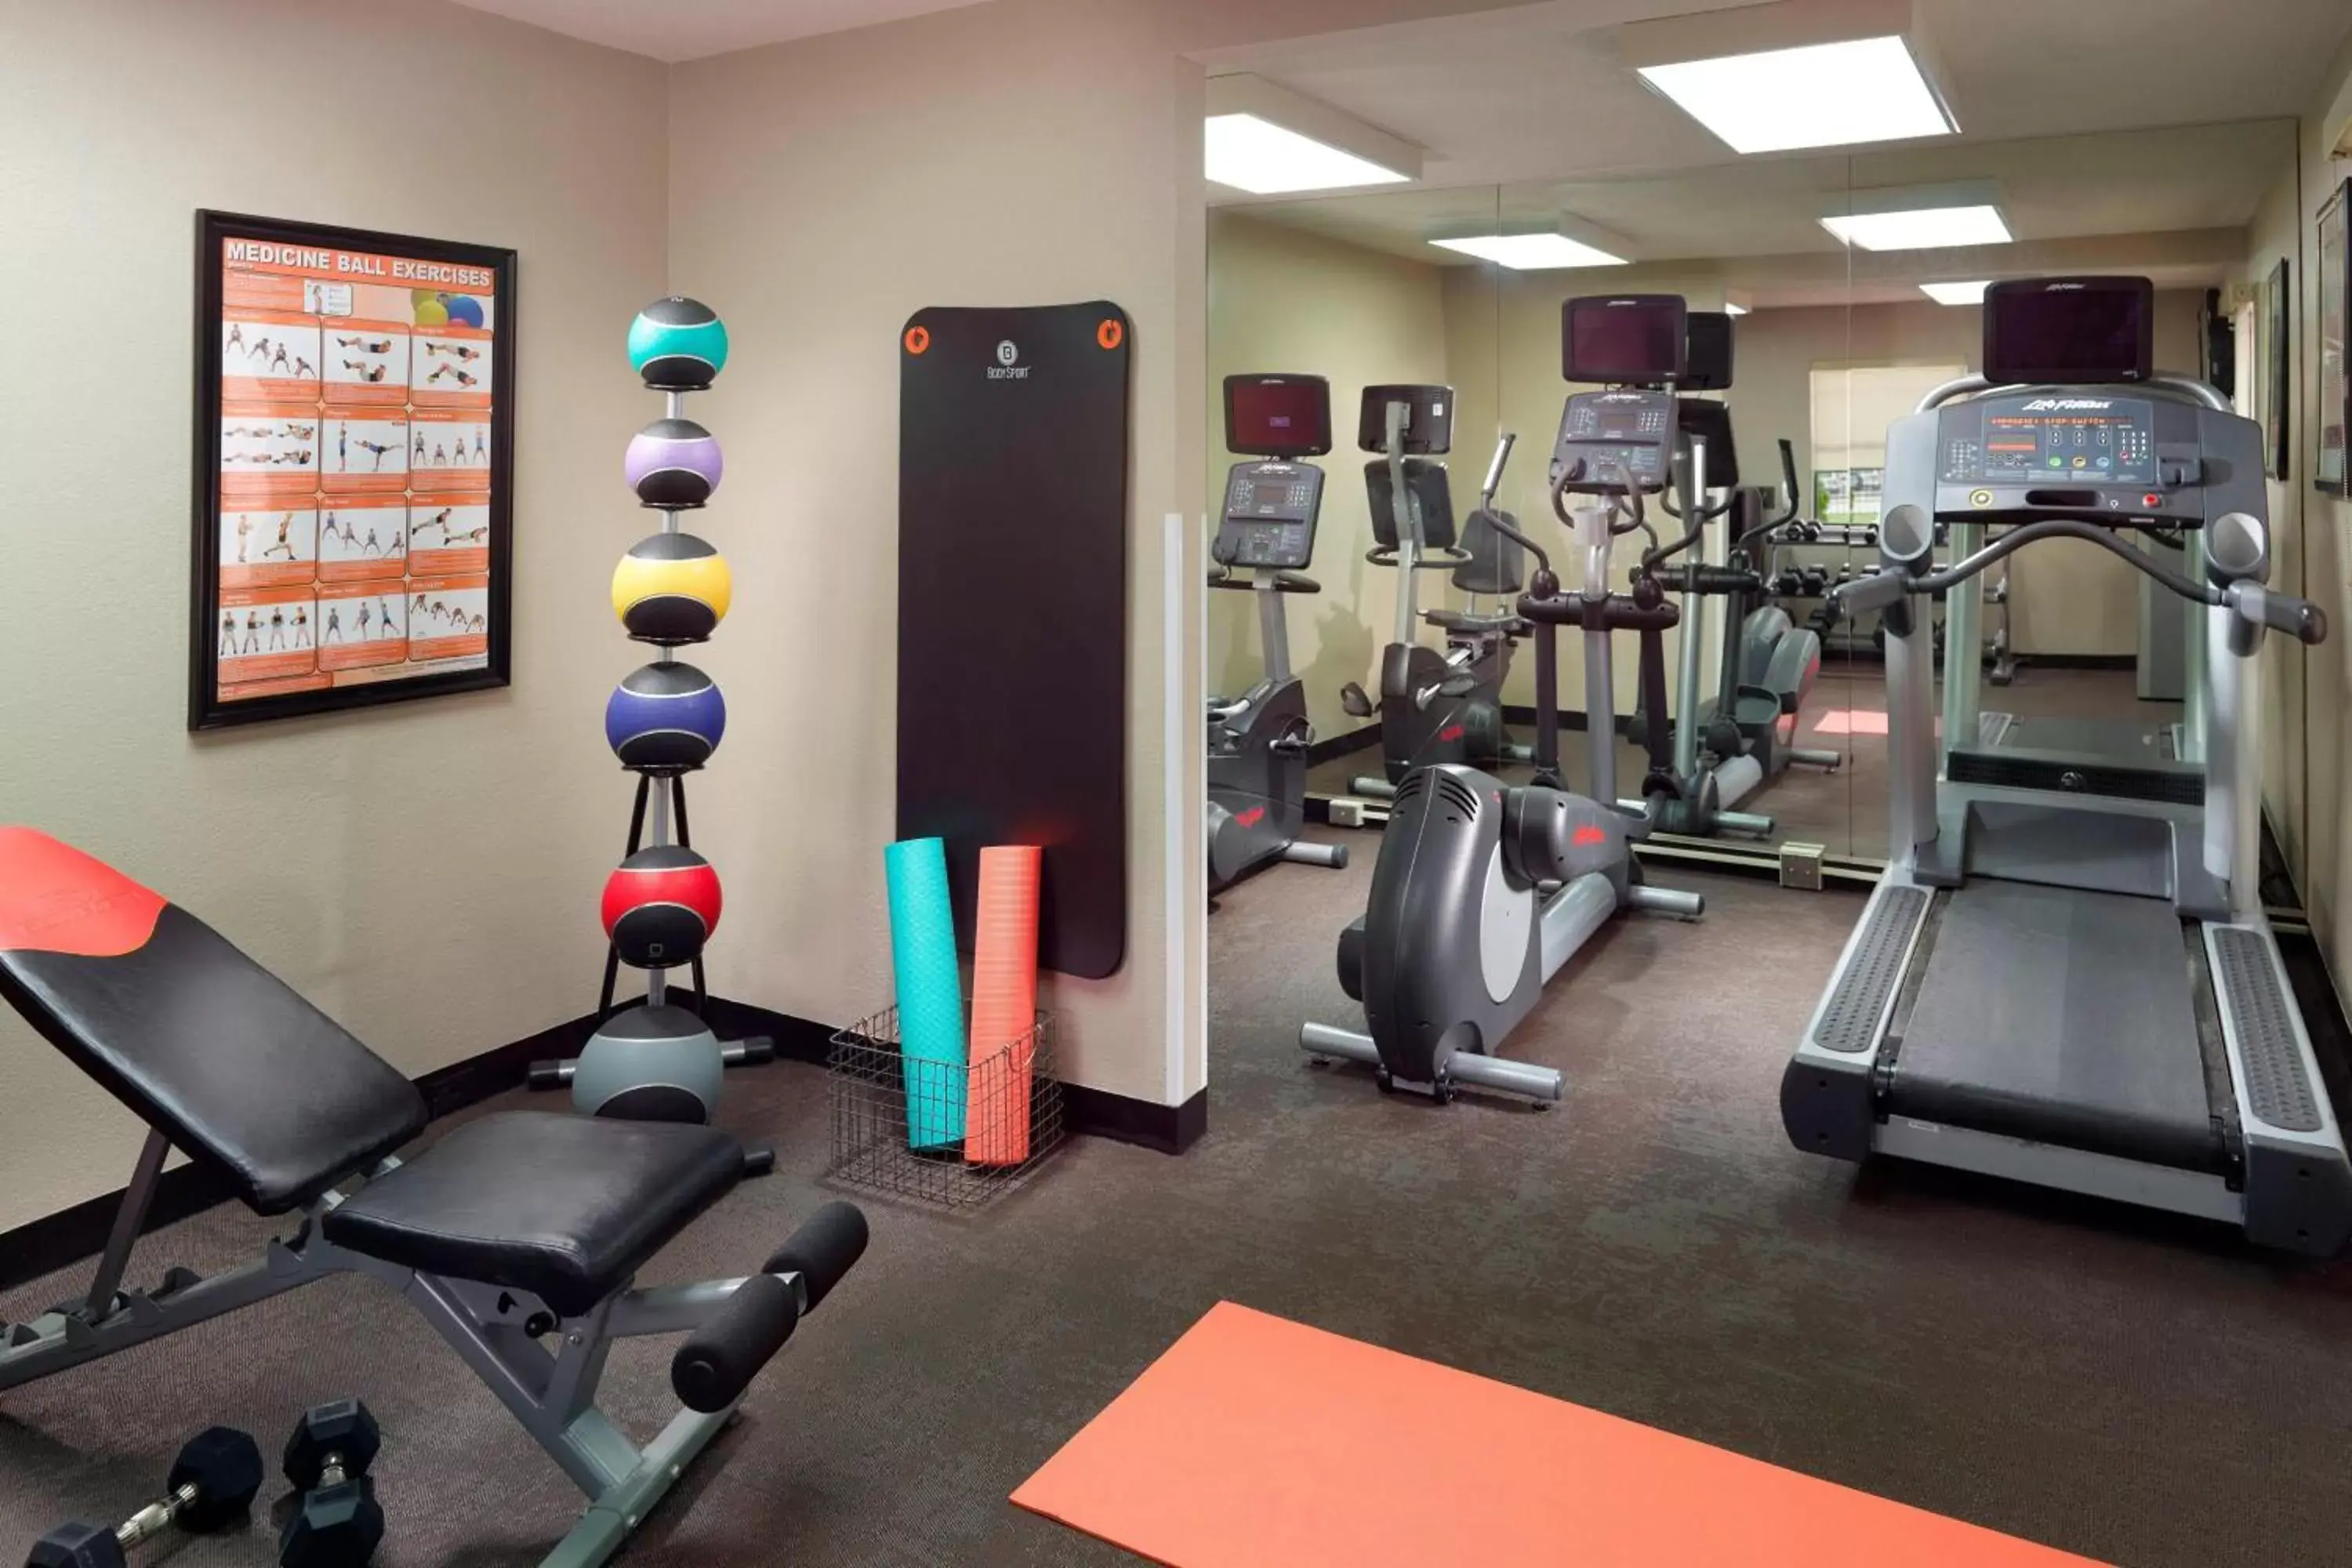 Fitness centre/facilities, Fitness Center/Facilities in Residence Inn by Marriott Atlanta Buckhead